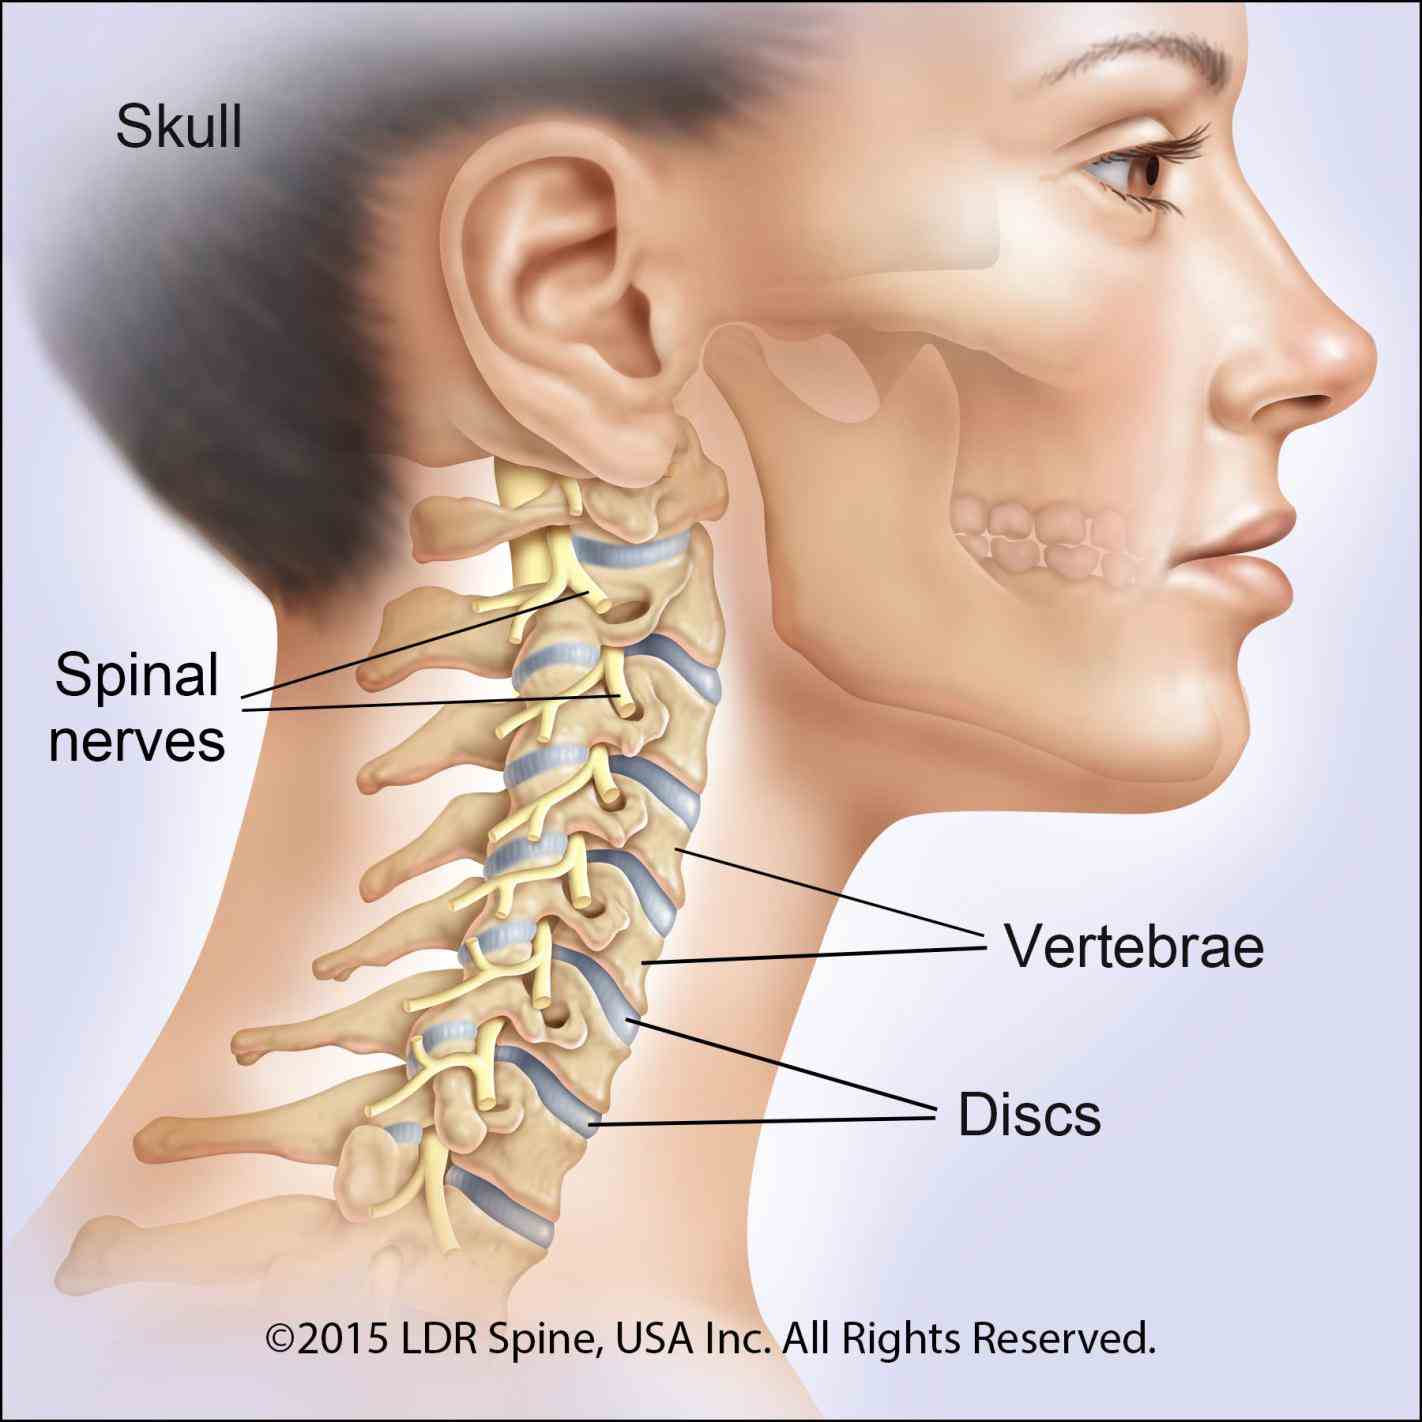 vertebrates cervical vertebrae singular vertebra are the of neck immediately spinal nerves emerge from above for example nerve c